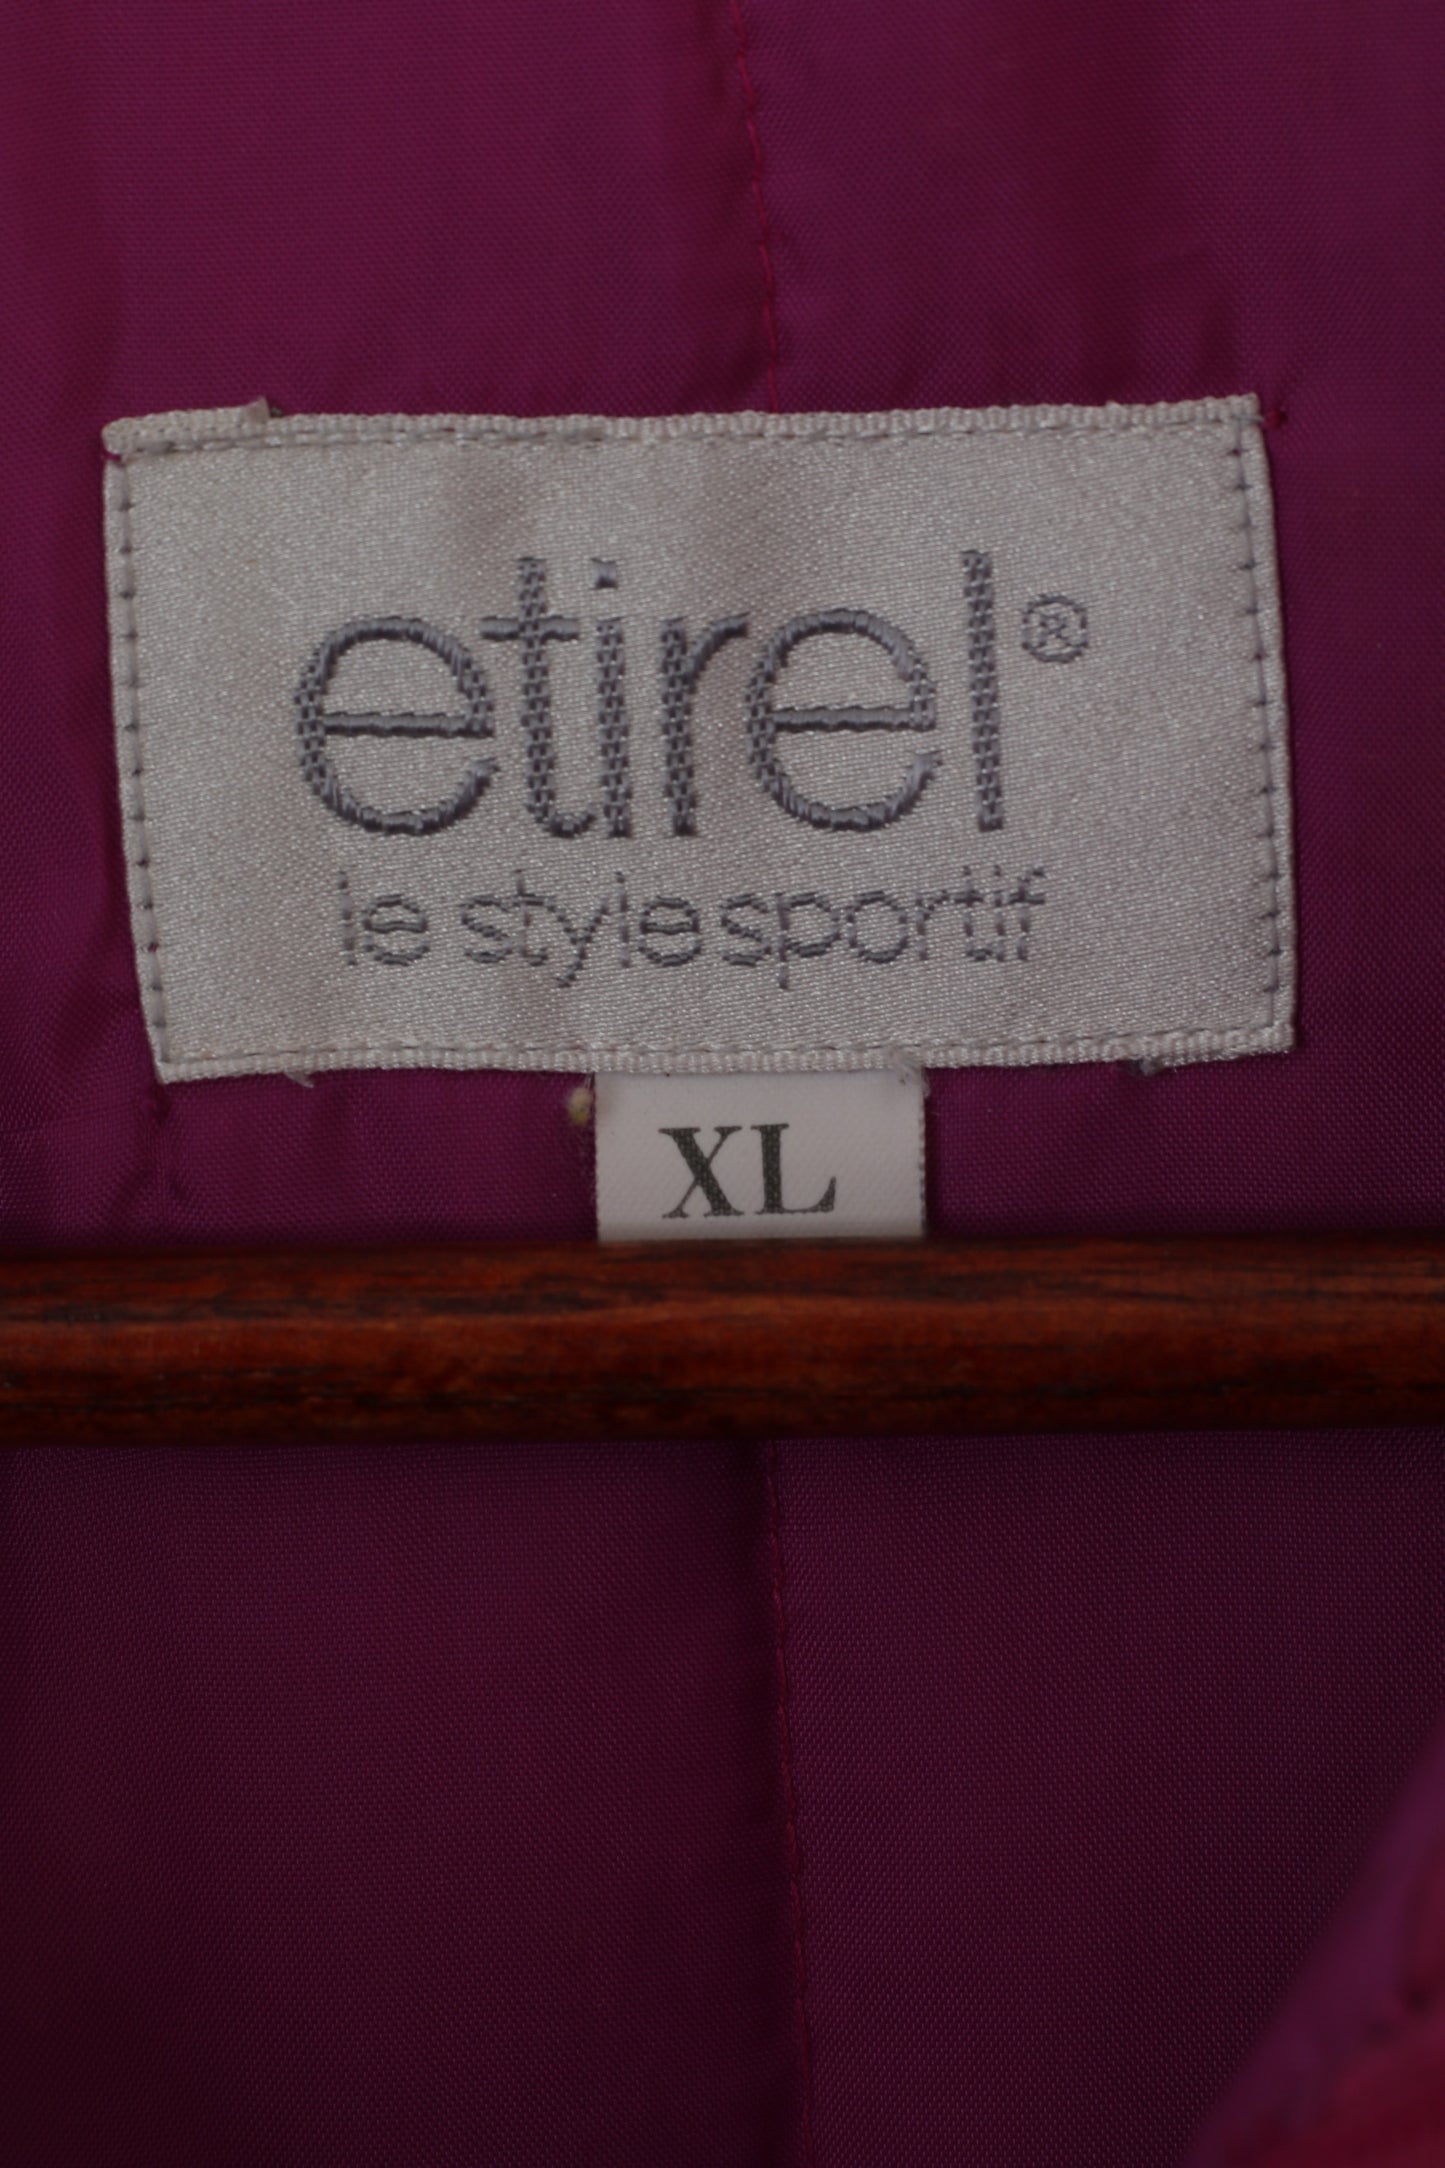 Etirel Le Style Women XL Bomber Jacket Purple Vintage Outdoor Nylon Waterproof Top